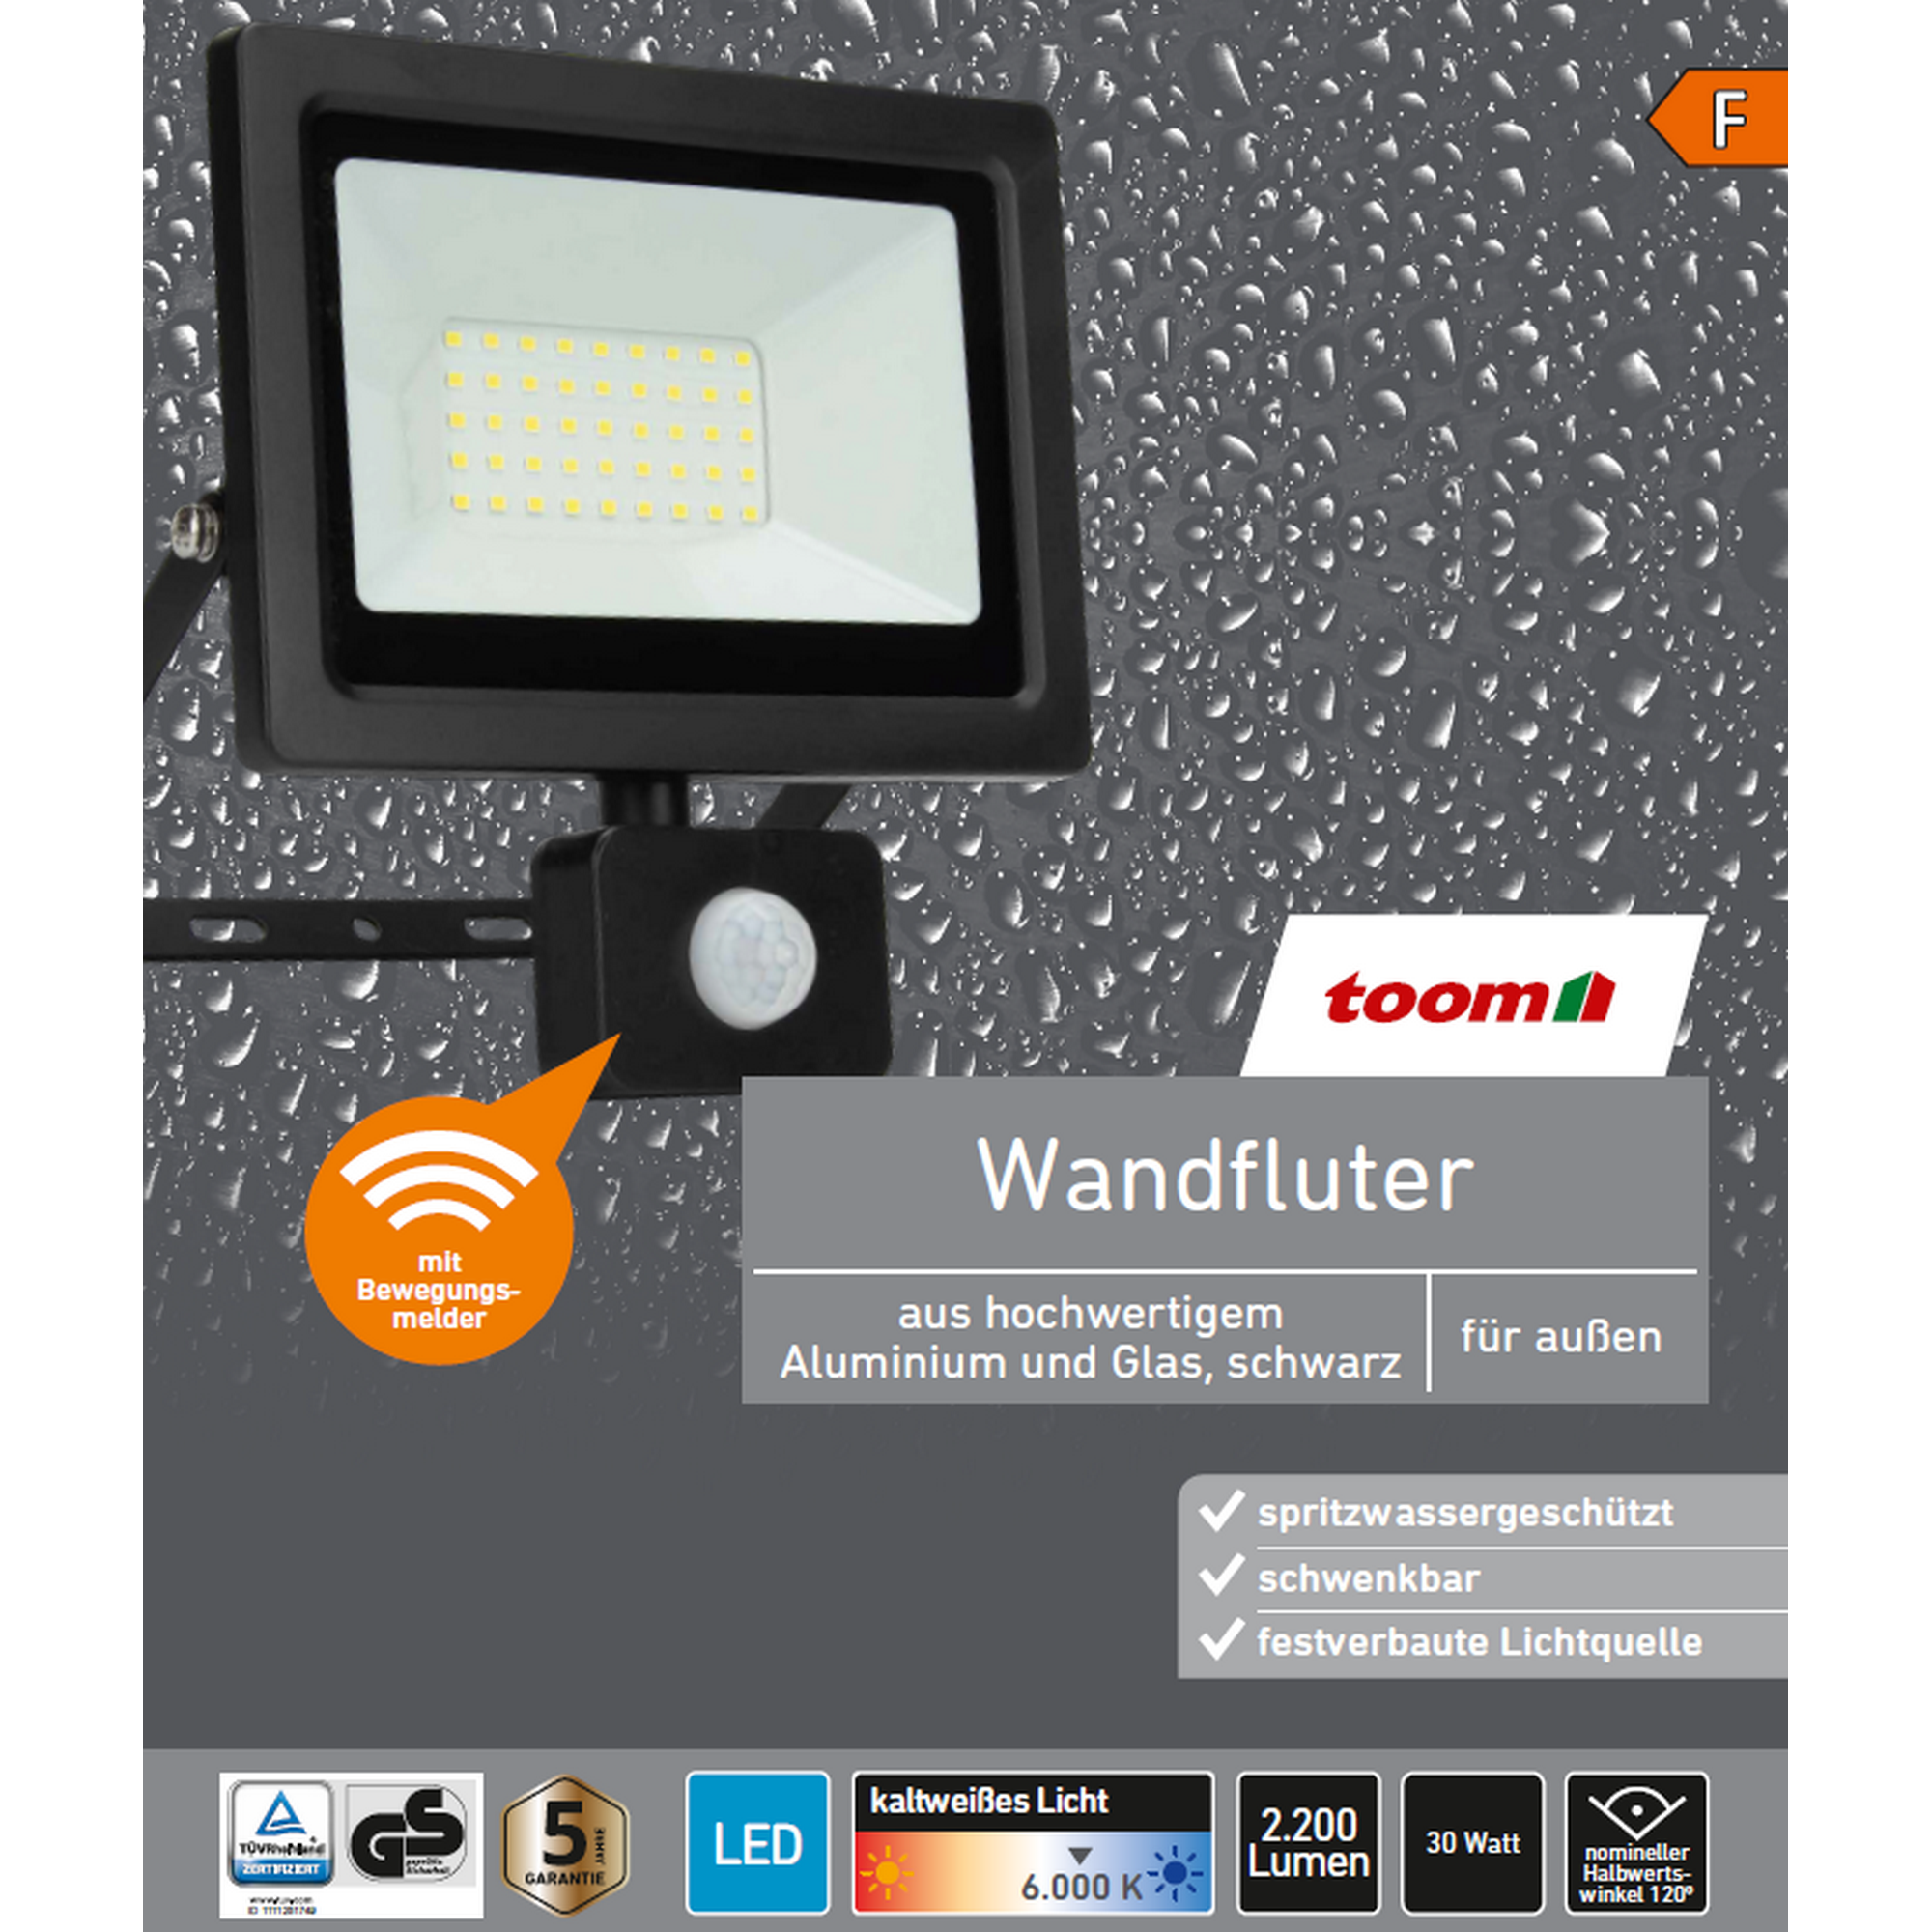 LED-Wandfluter mit Bewegungsmelder schwarz 30 W 2200 lm + product picture